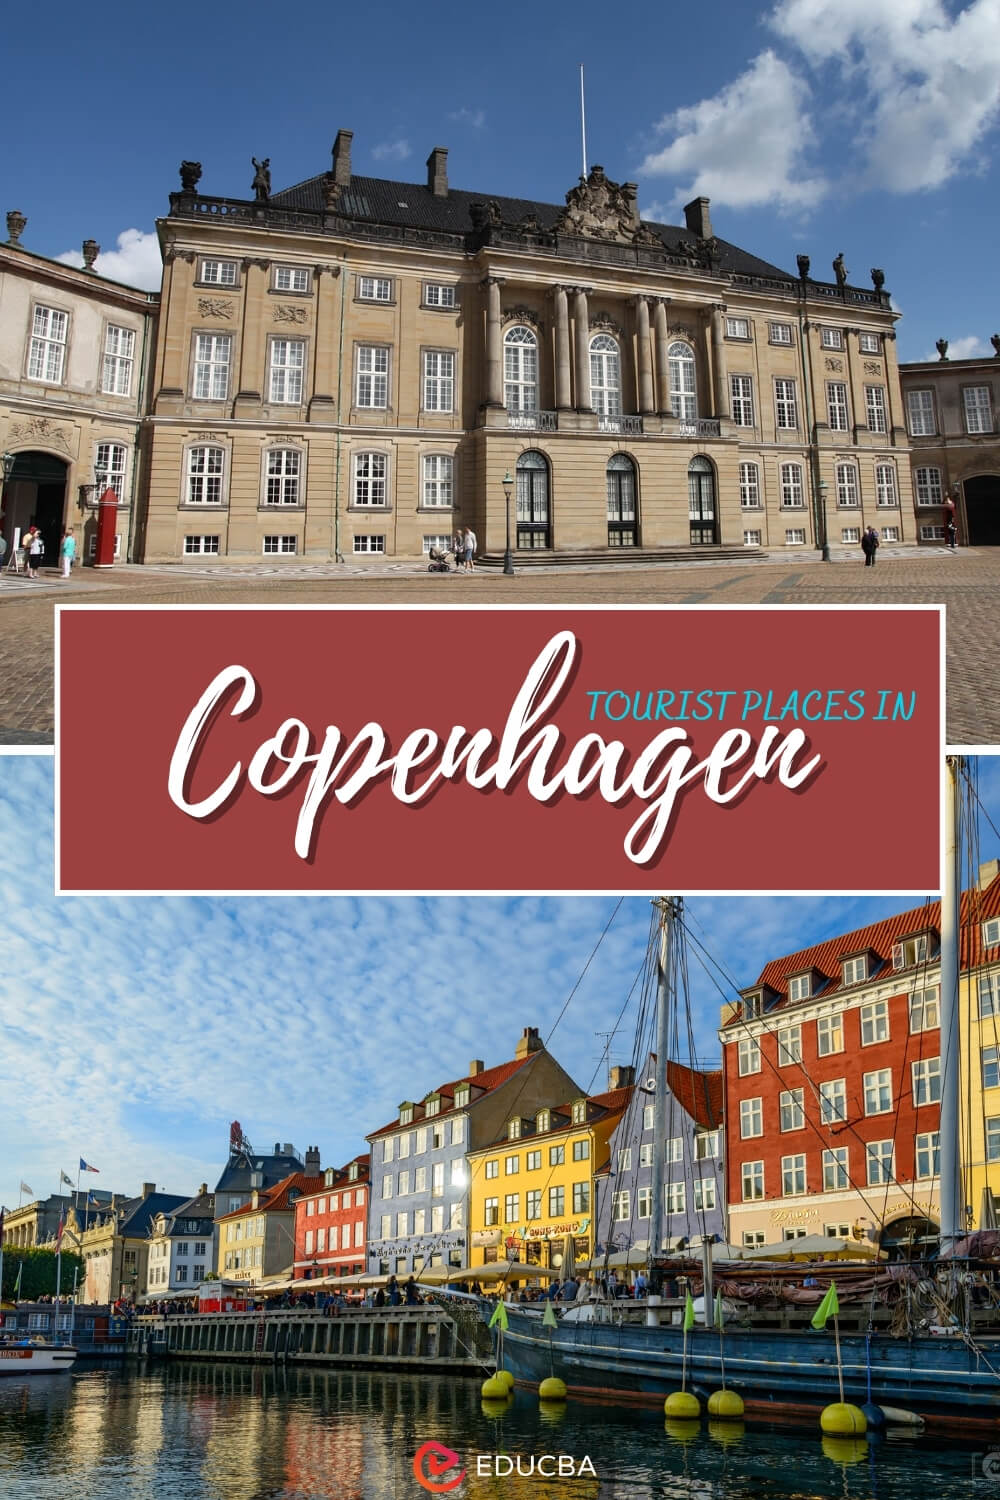 Tourist places in Copenhagen